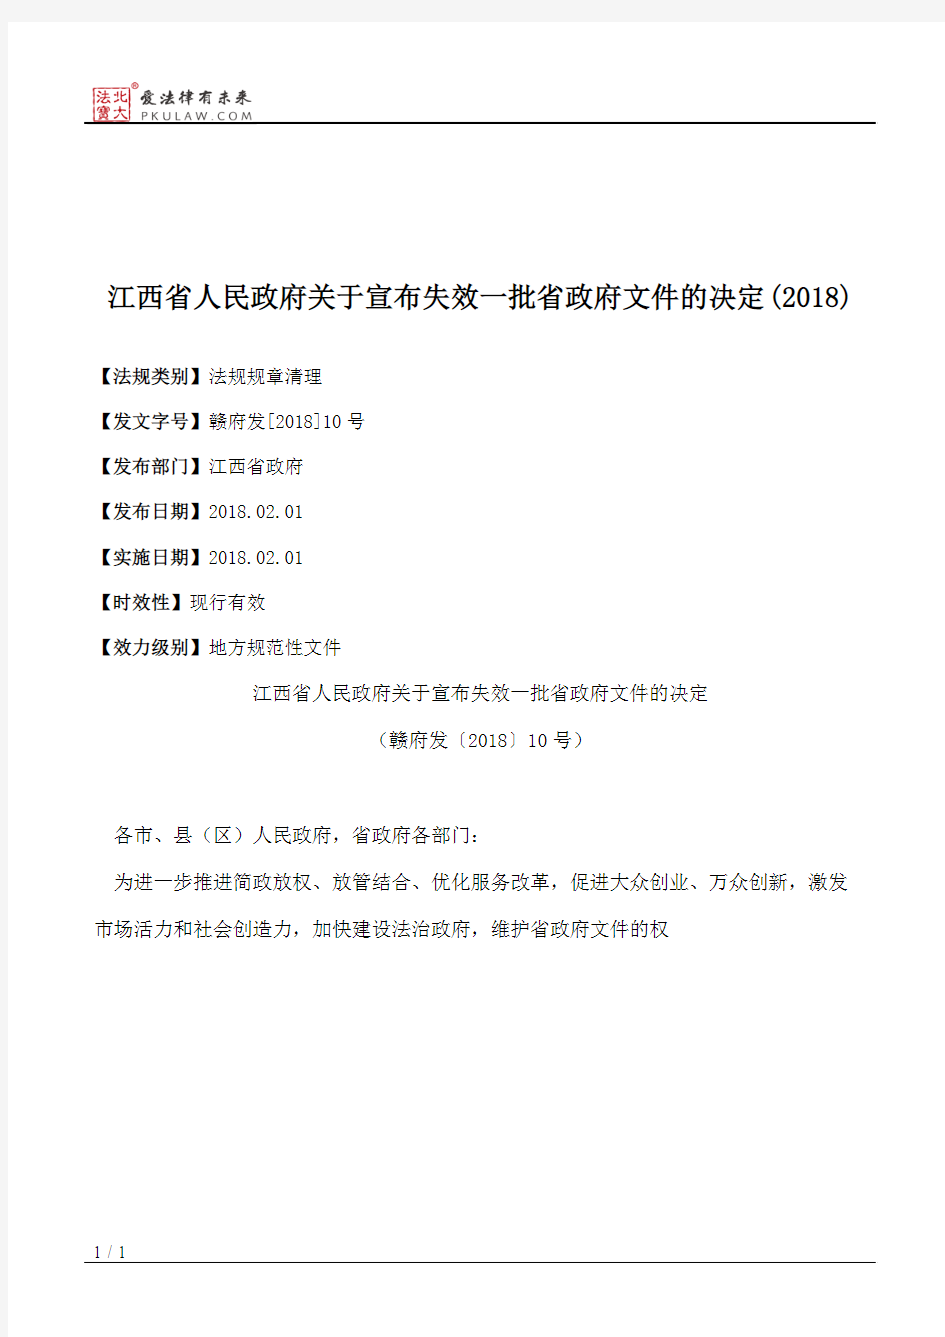 江西省人民政府关于宣布失效一批省政府文件的决定(2018)